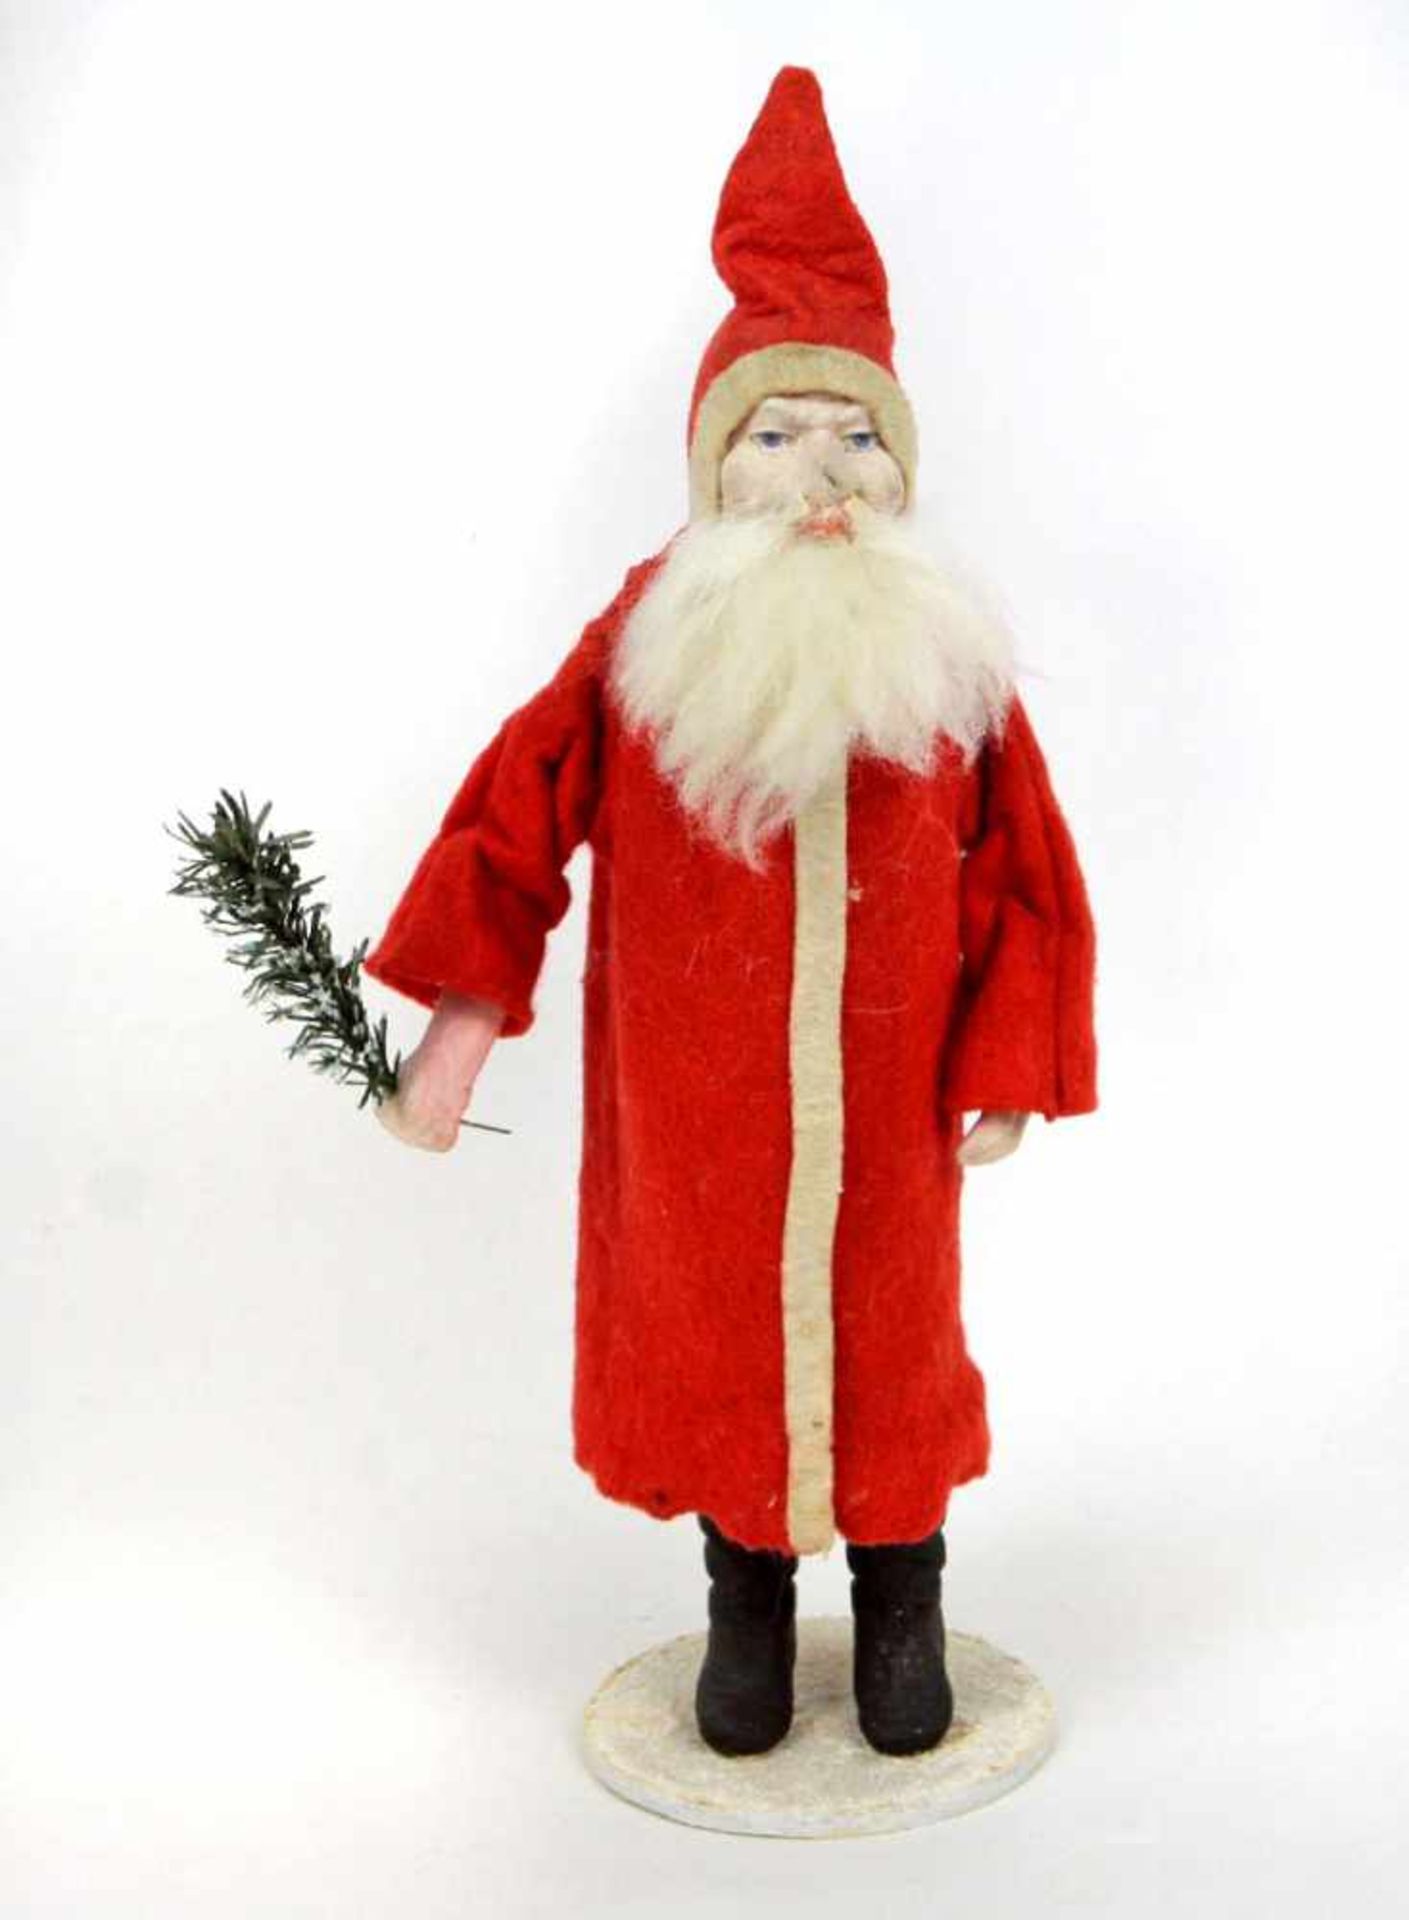 Weihnachtsmannmit Mechanismus zum Bewegen der Arme, roter langer Filzmantel, schwarze Stiefel,